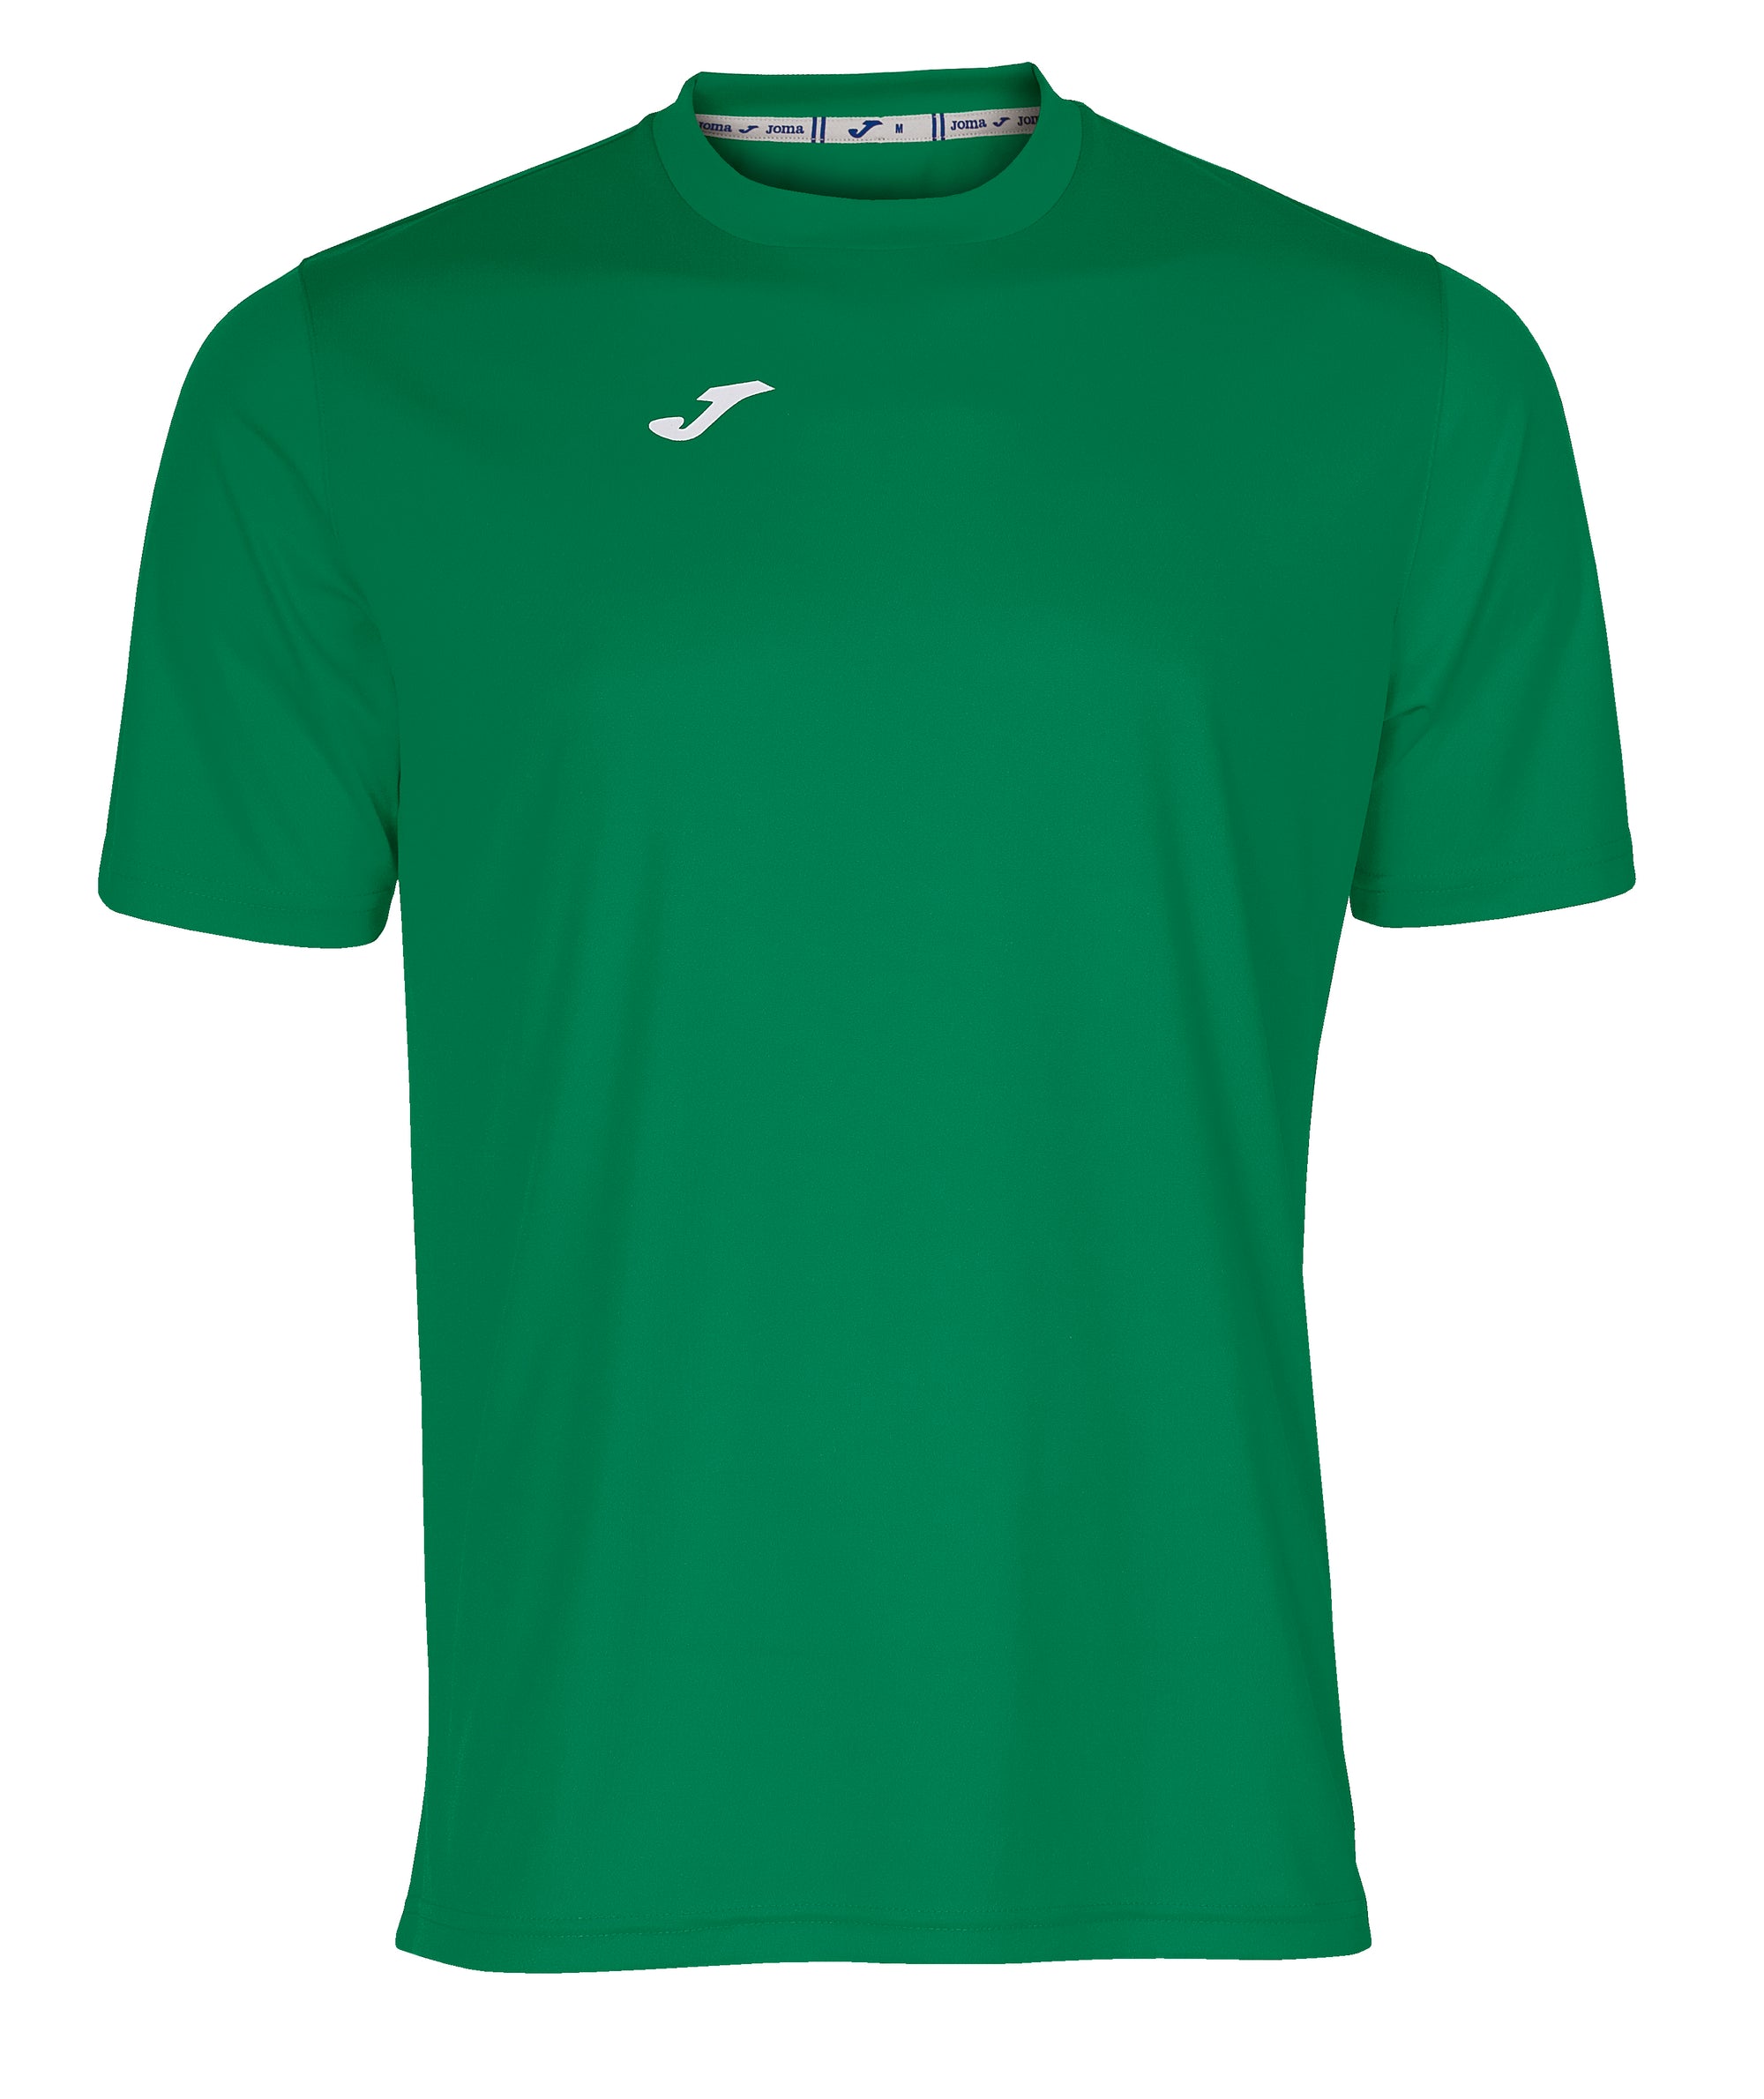 Joma Combi Short Sleeved T-Shirt - Green Medium